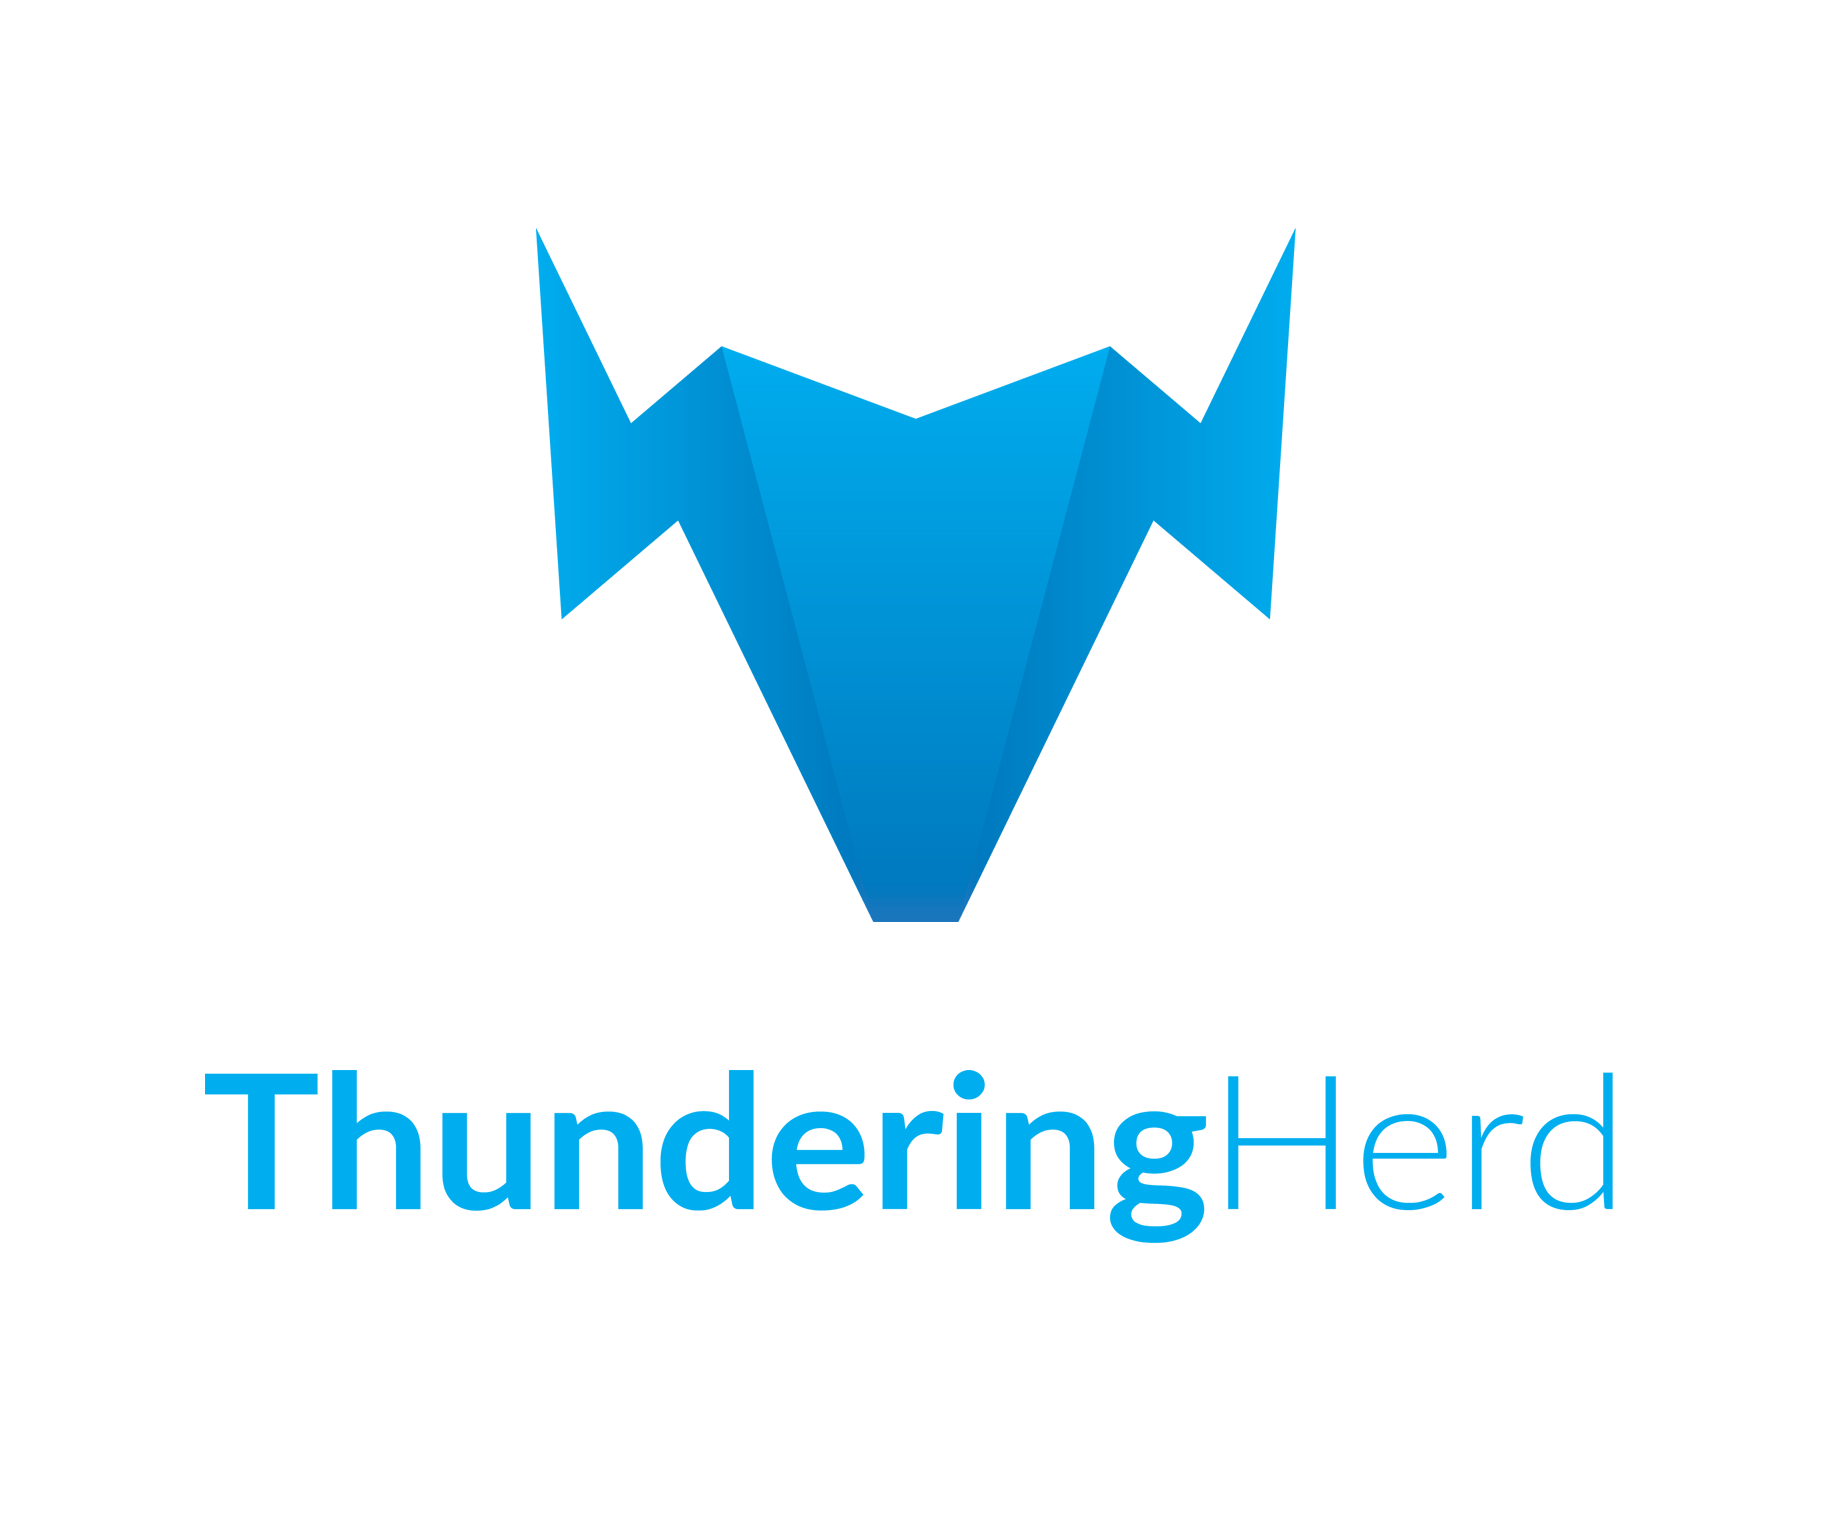 Thunderingherd logo